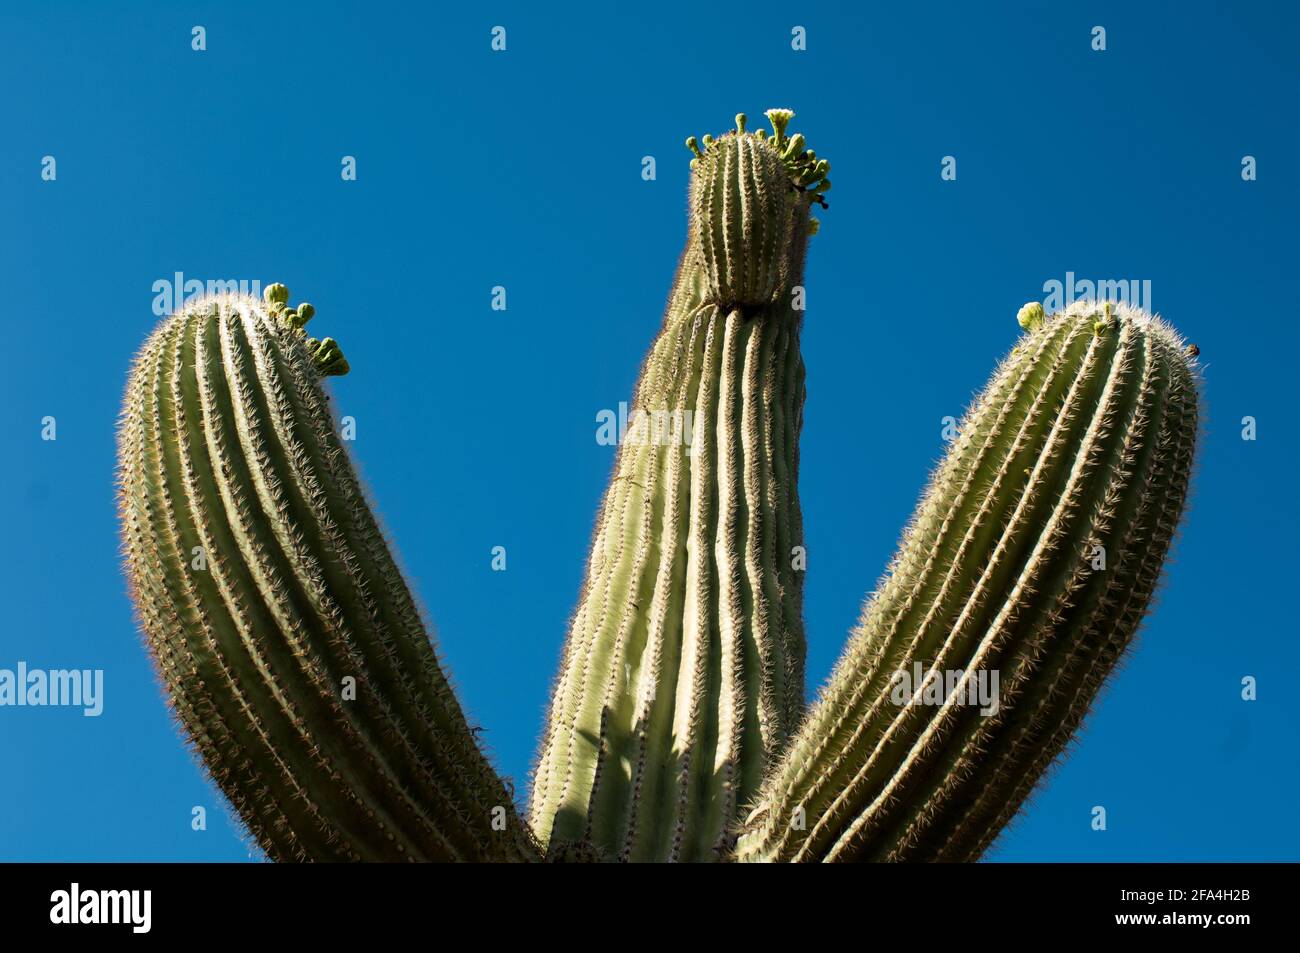 Il saguaro, Carnegia gigantea è un cactus del deserto di sonora dell'Arizona. È considerato il re del cactus, cresce lentamente, potrebbe vivere 200 anni, c. Foto Stock